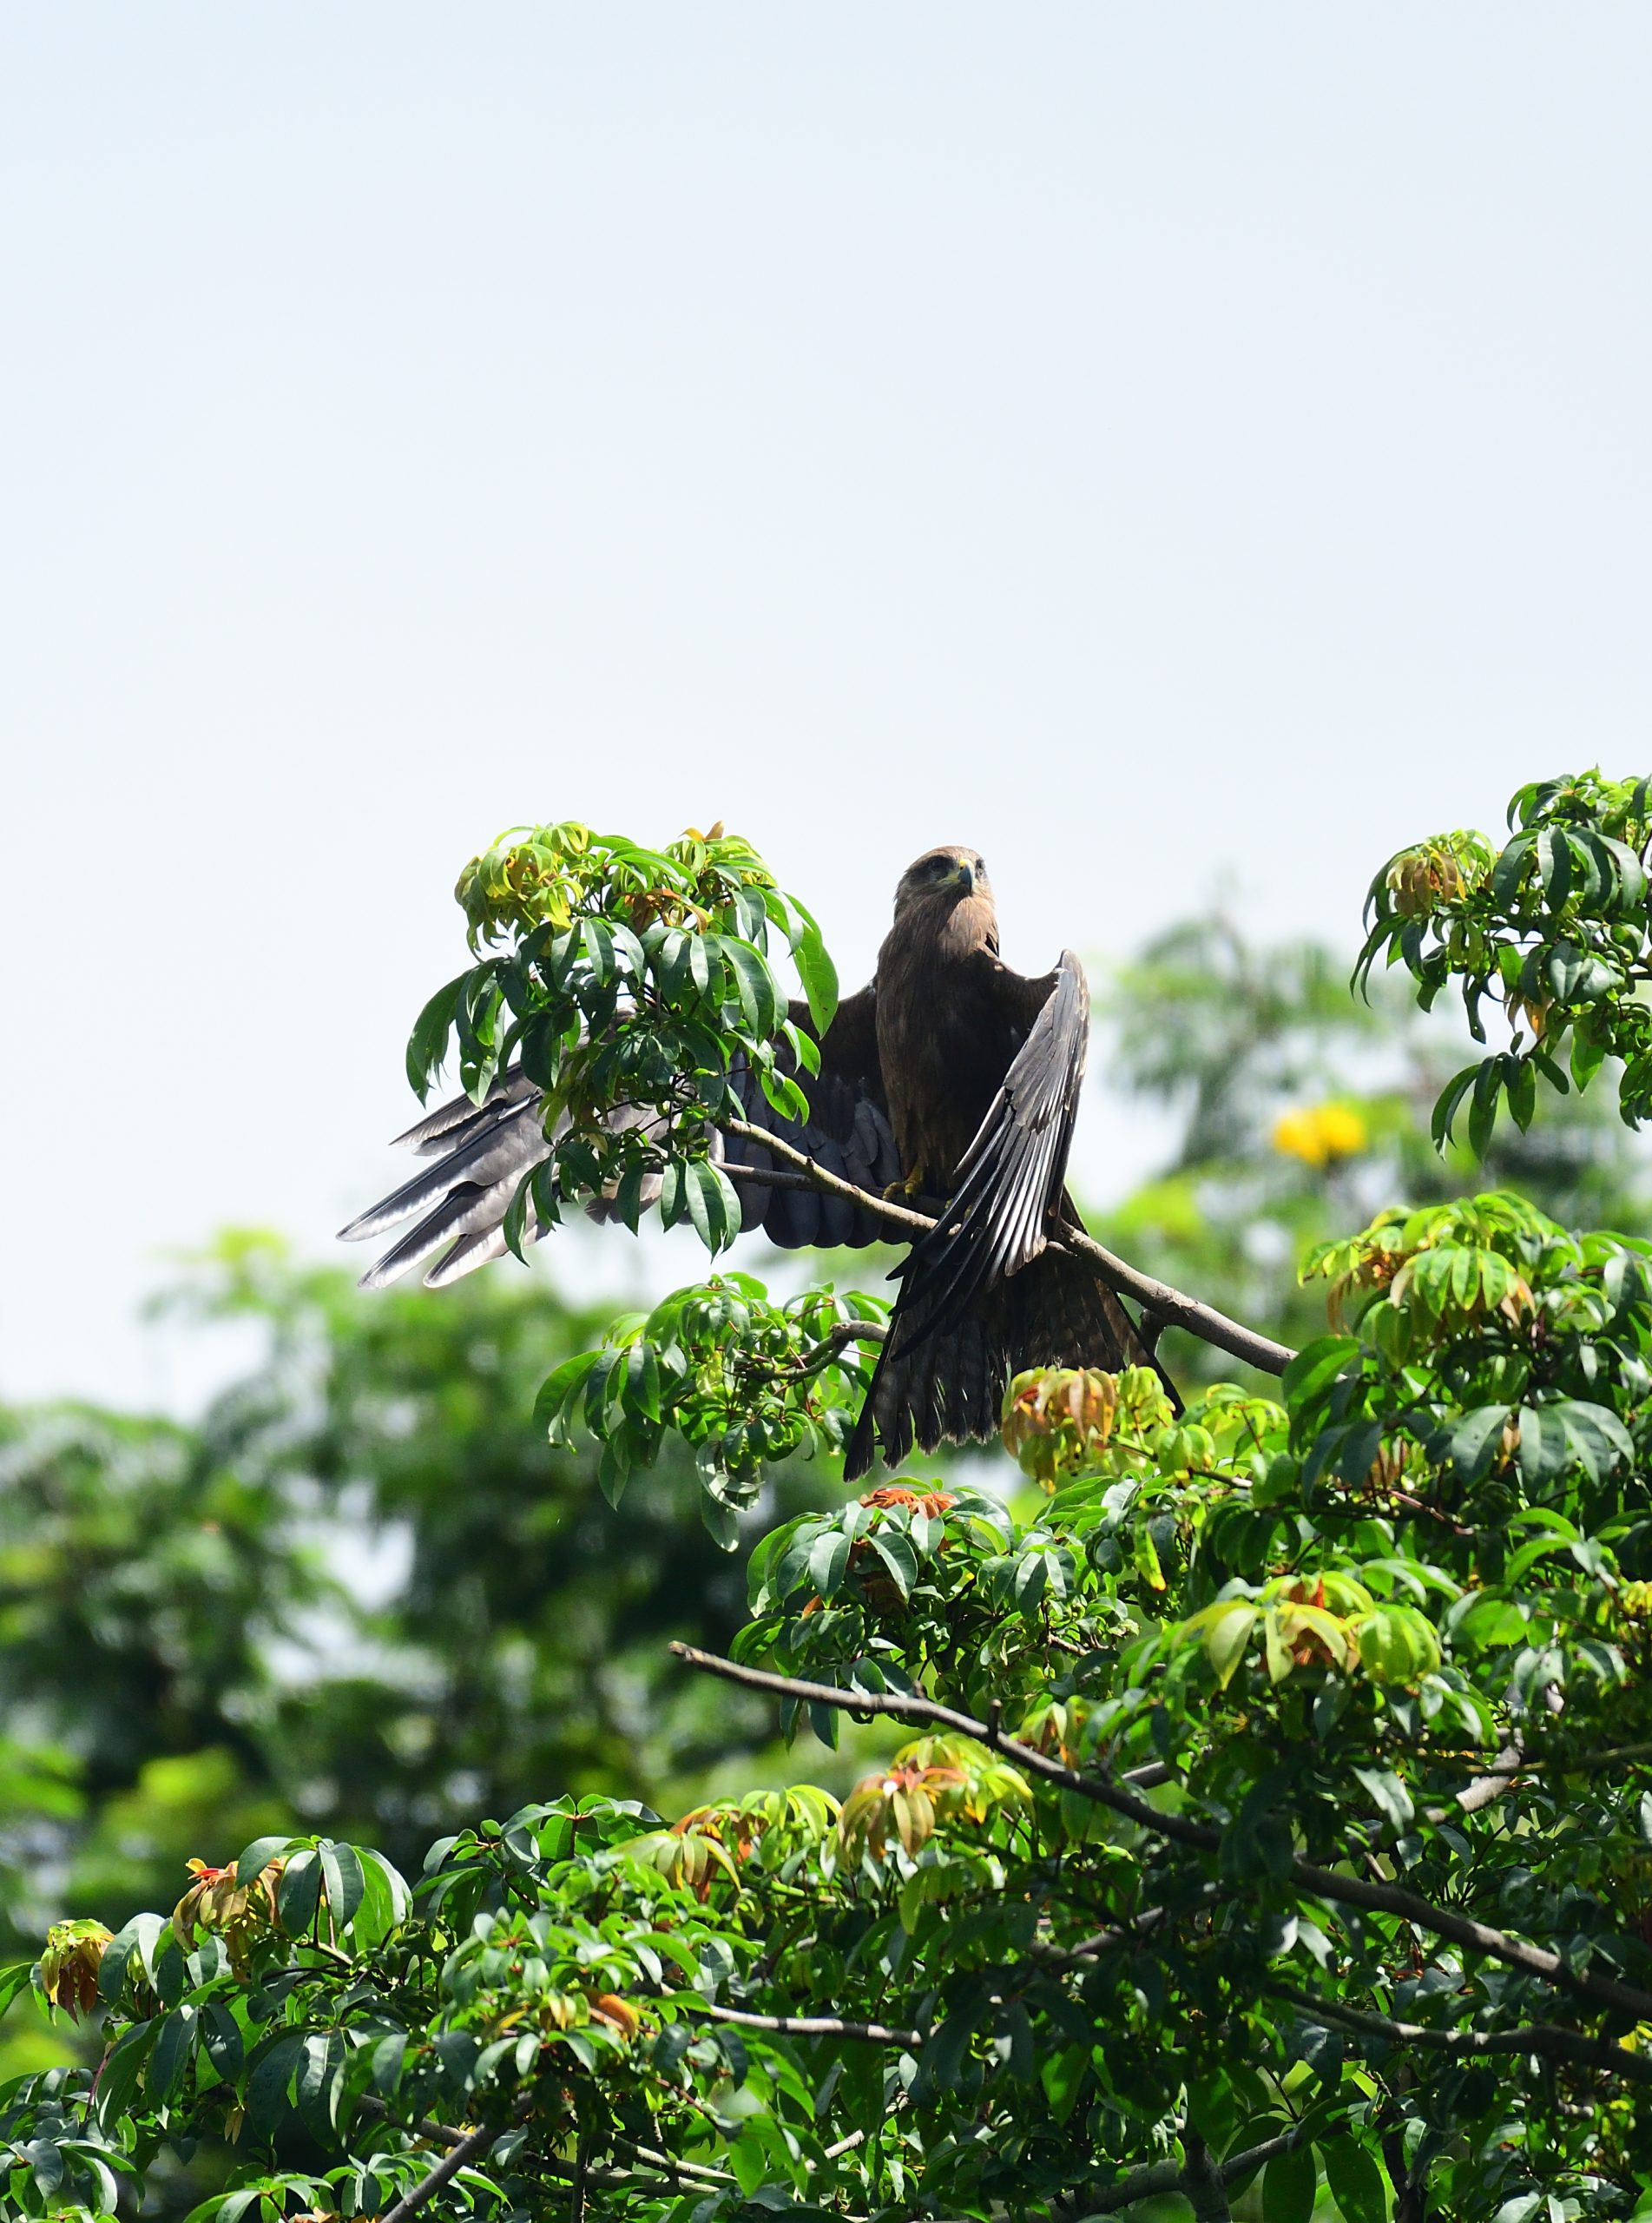 Kite bird sitting on a branch